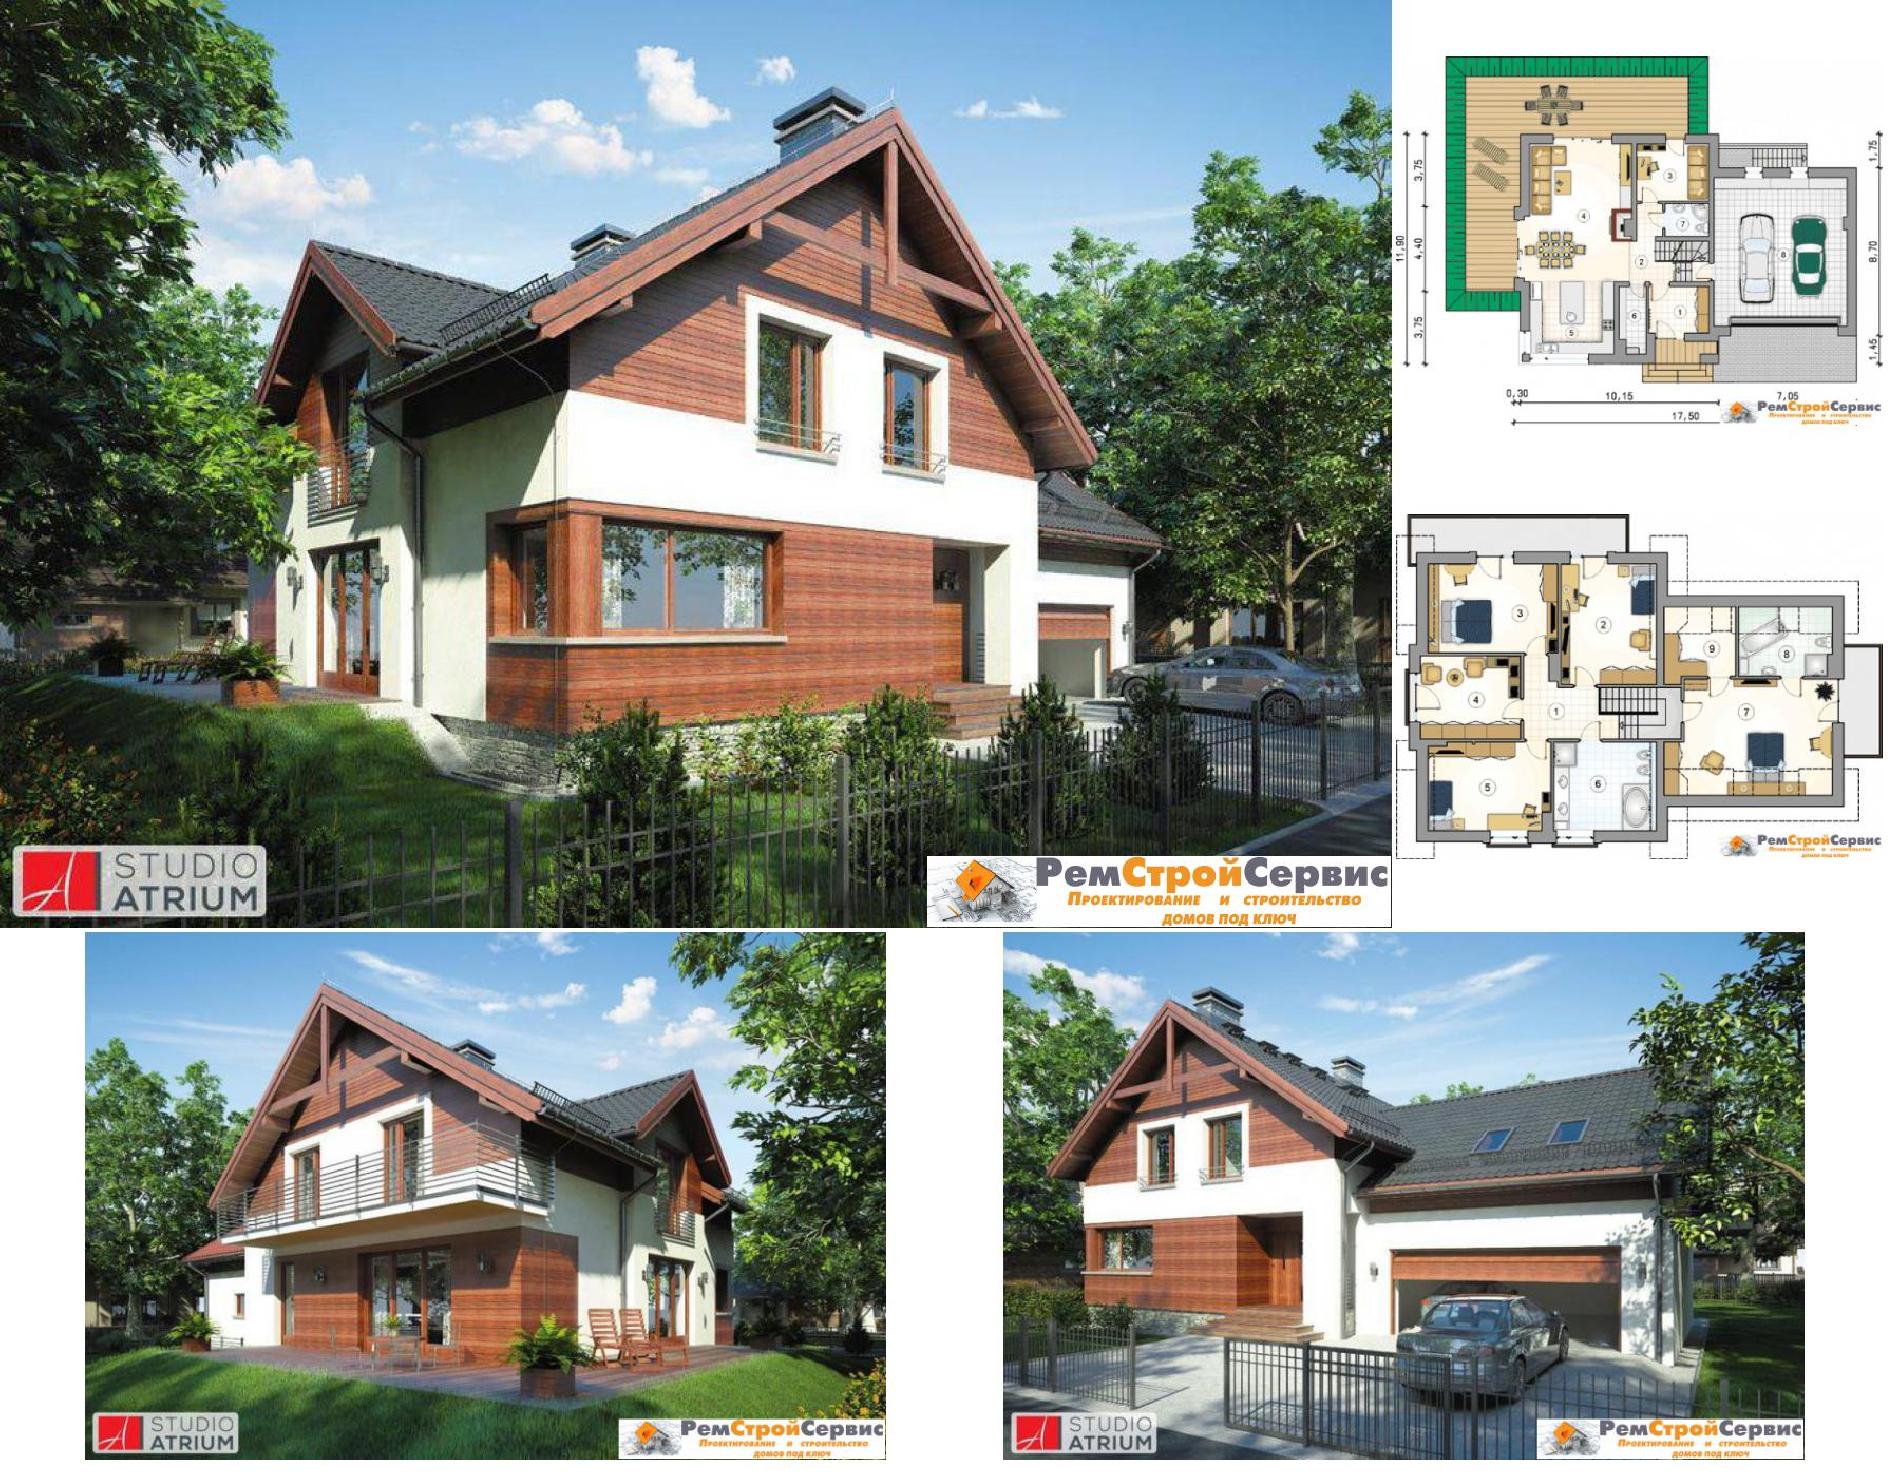 Проект дома №r-26-98 proect_r-26-98.jpg